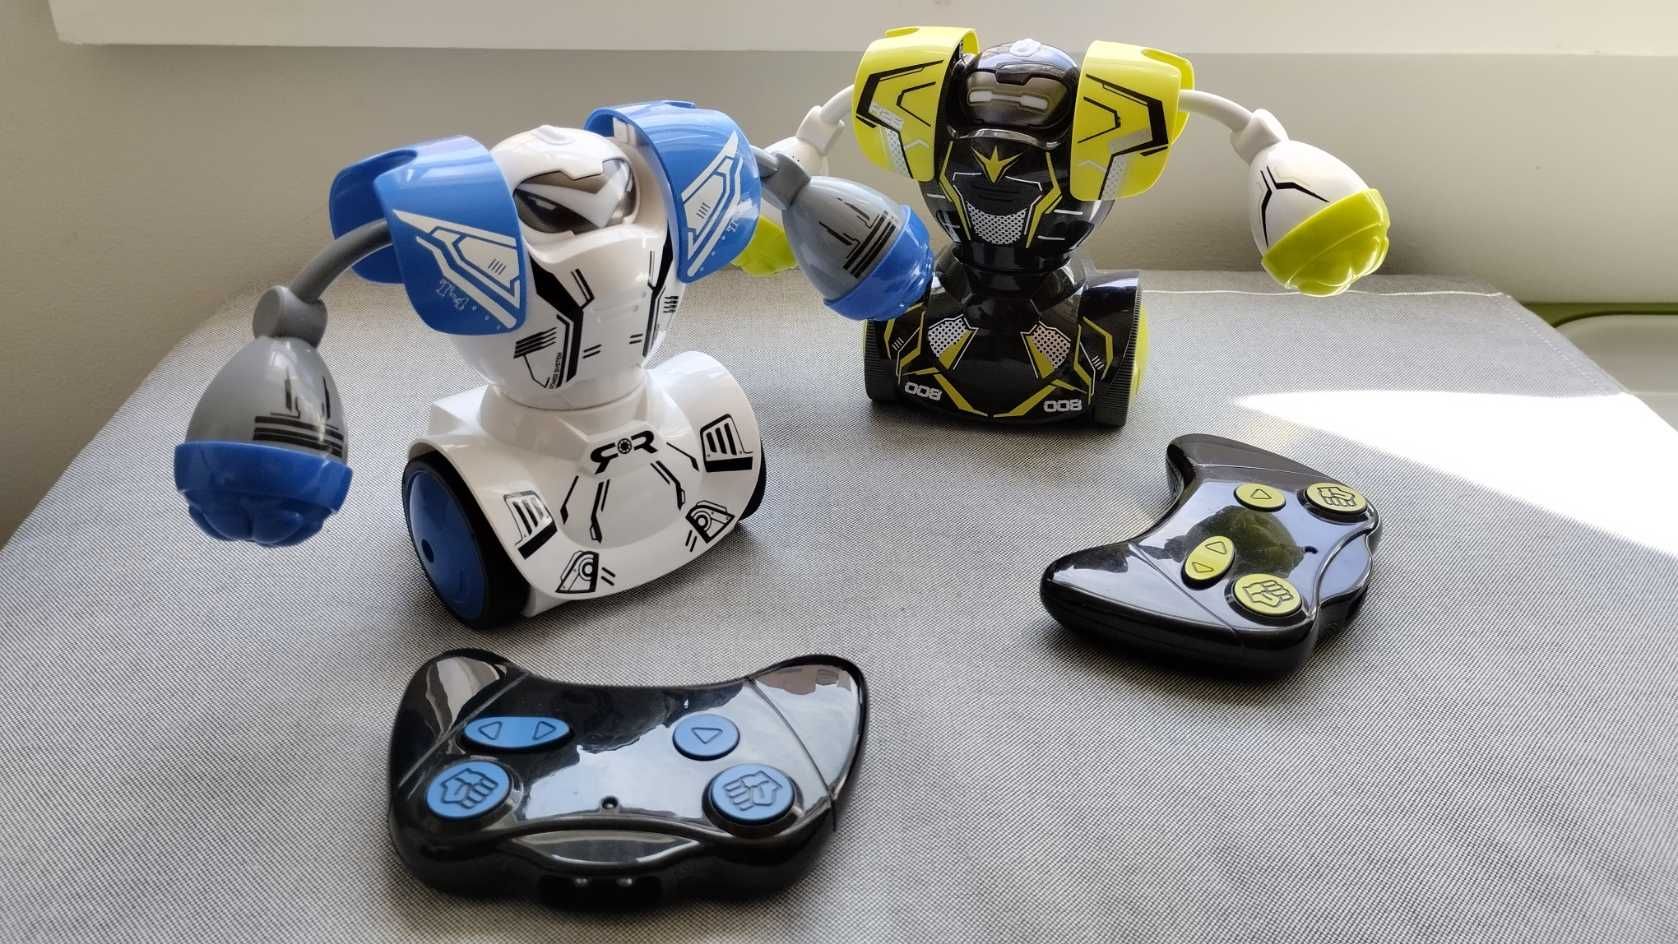 YCOO - Robo Kombat Duplo, ROBOTS